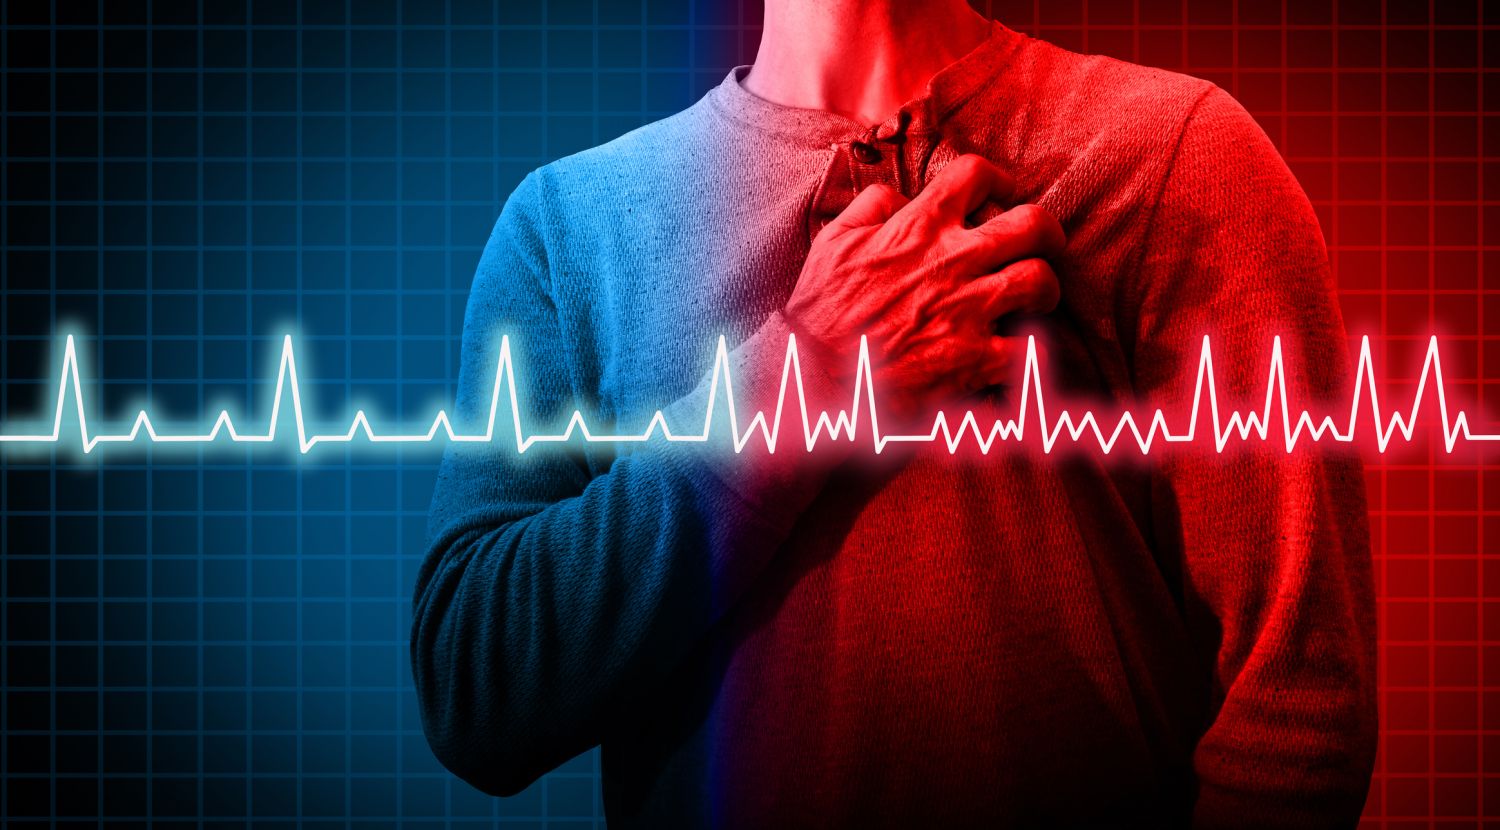 Oberkörper einer Person mit schmerzender Brust, davor ein EKG-Graph, Herzinfarkt